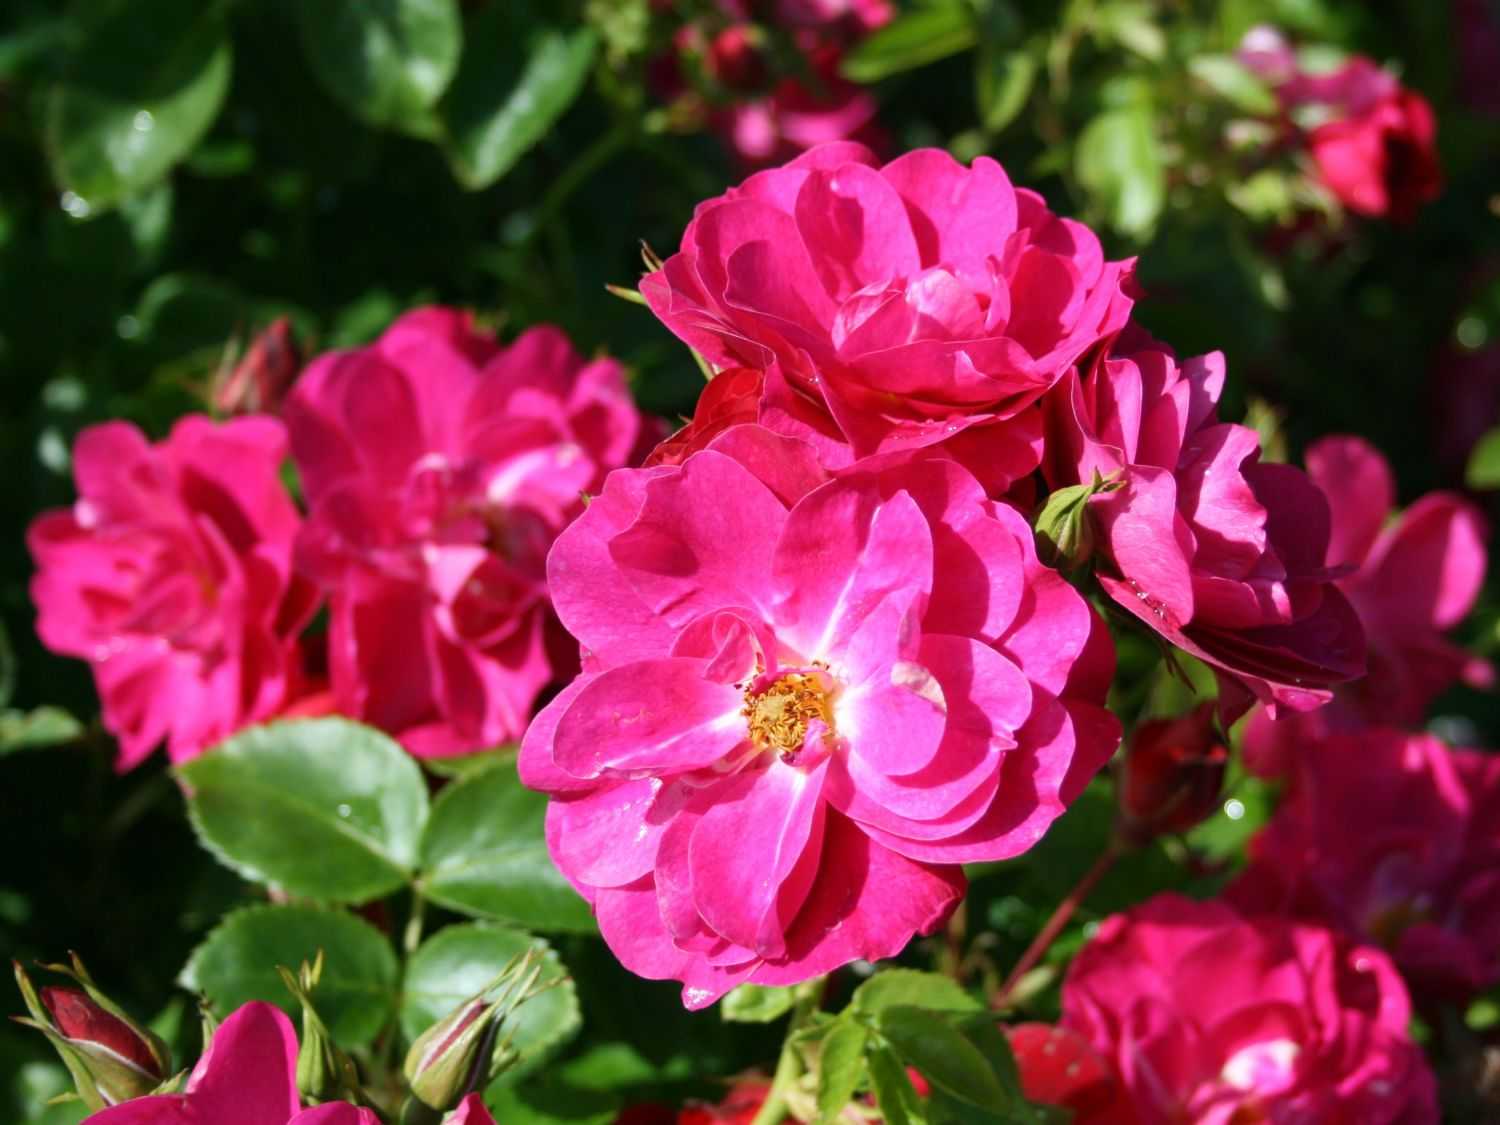 Выращивание плетистой розы джон кэбот: описание канадского паркового сорта